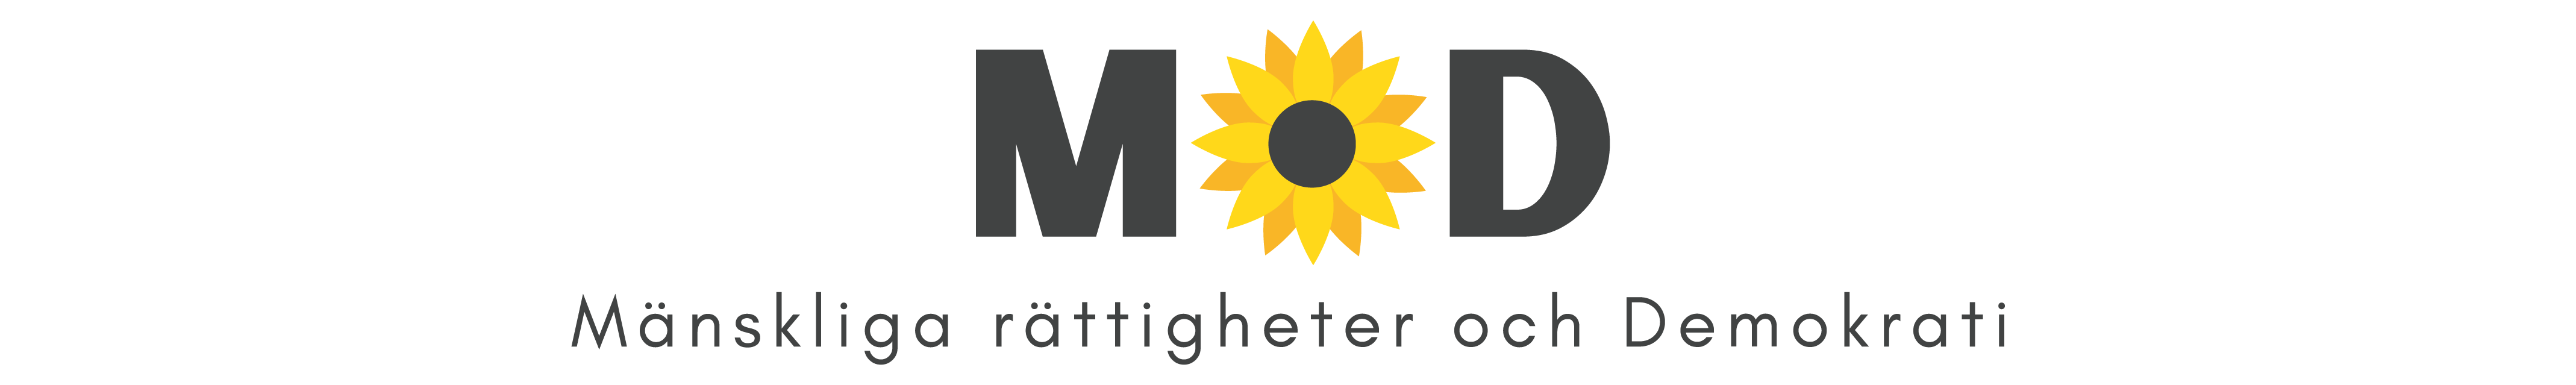 Symbol för partiet Mänskliga rättigheter och demokrati, gul solros med ordbild i svart.